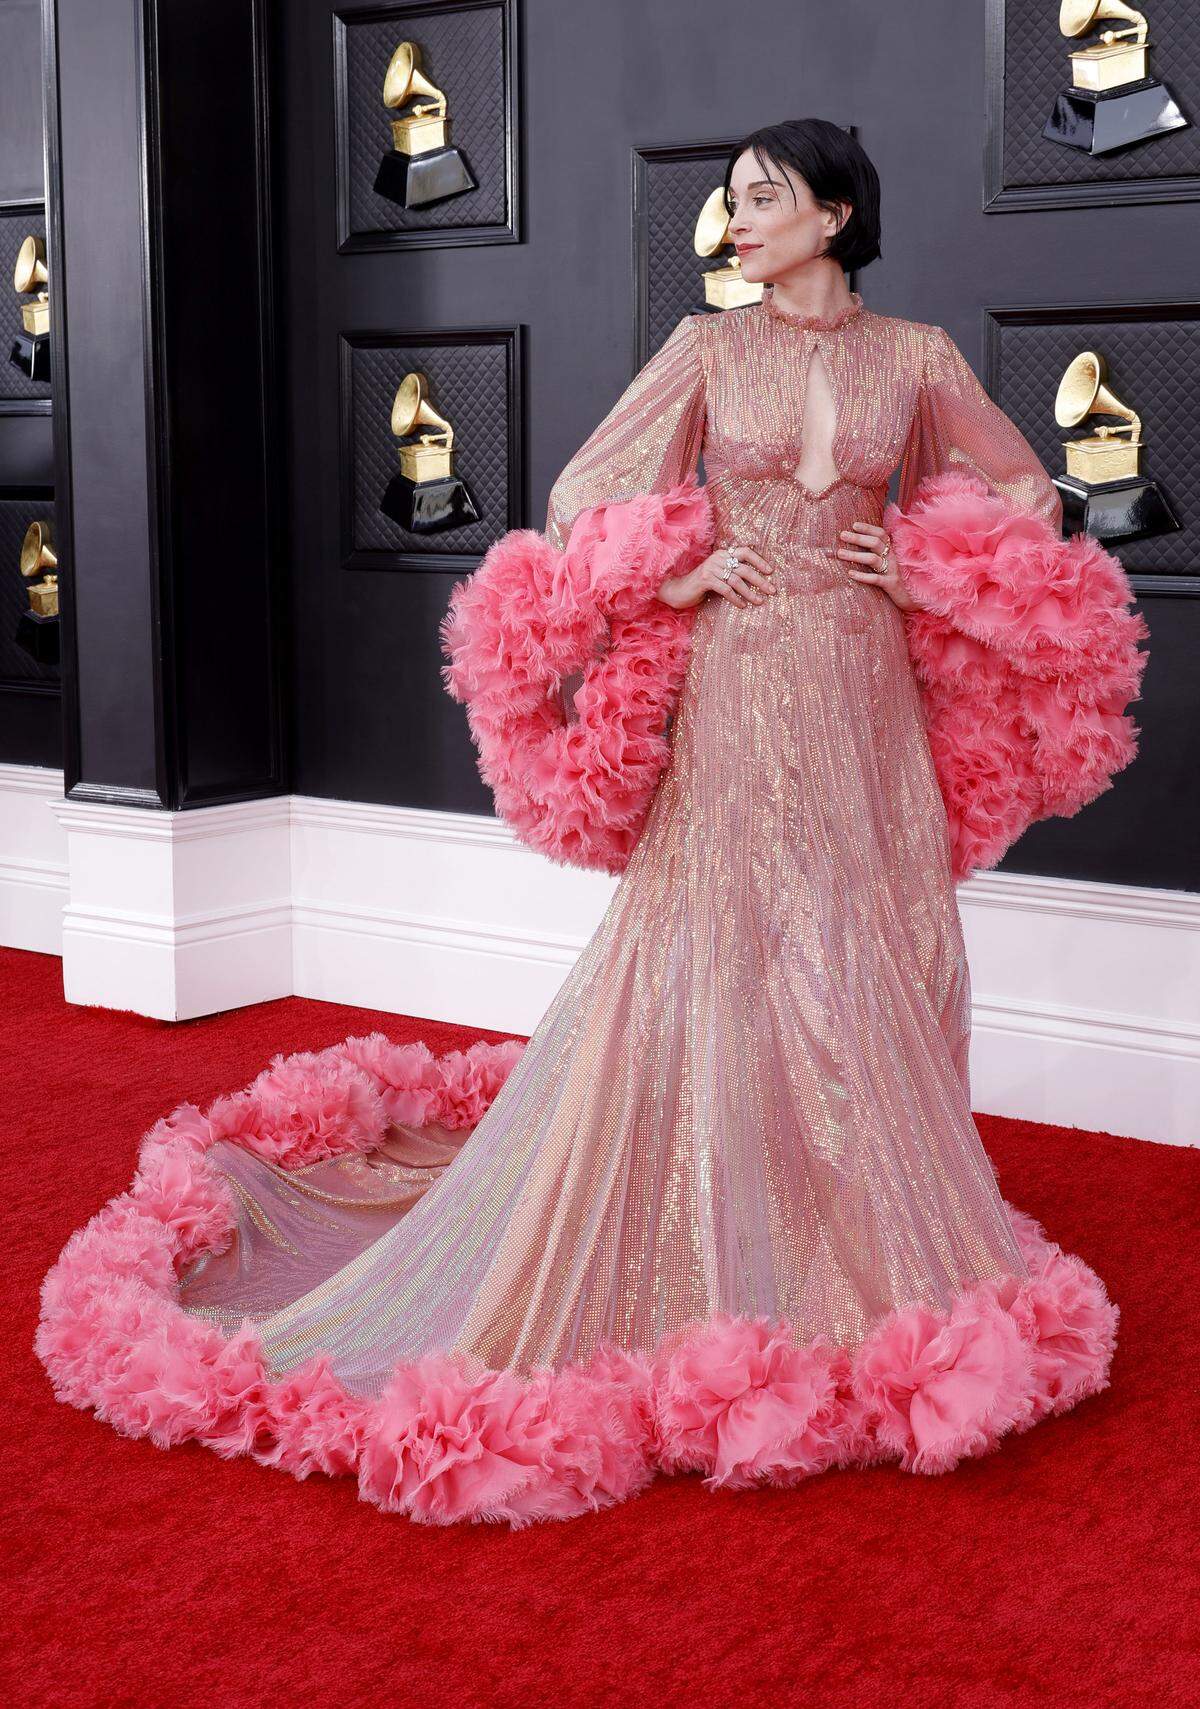 Die Gewinnerin des Grammys für das beste alternative Musikalbum, St. Vincent, erinnerte in ihrem Look an den Oscar-Auftritt von Jessica Chastein - beides von Gucci.